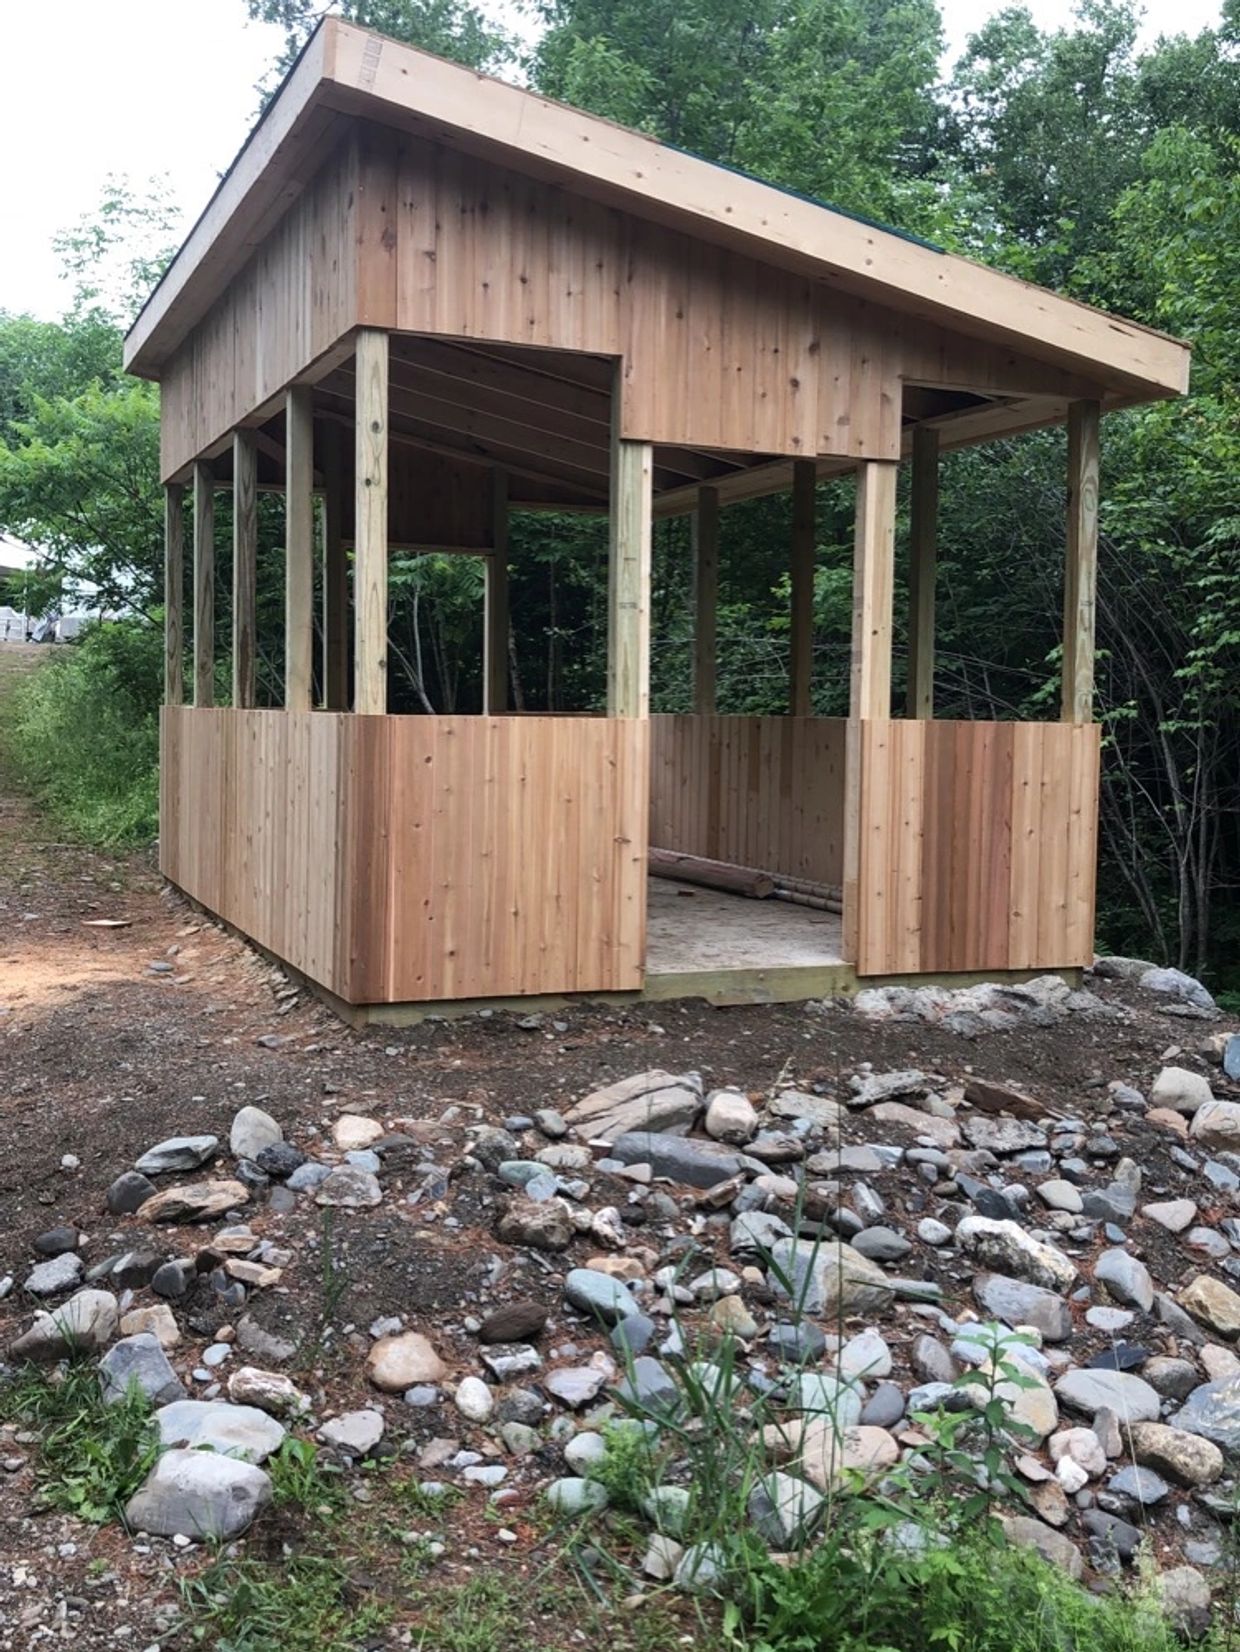 Shelter built for a customer.